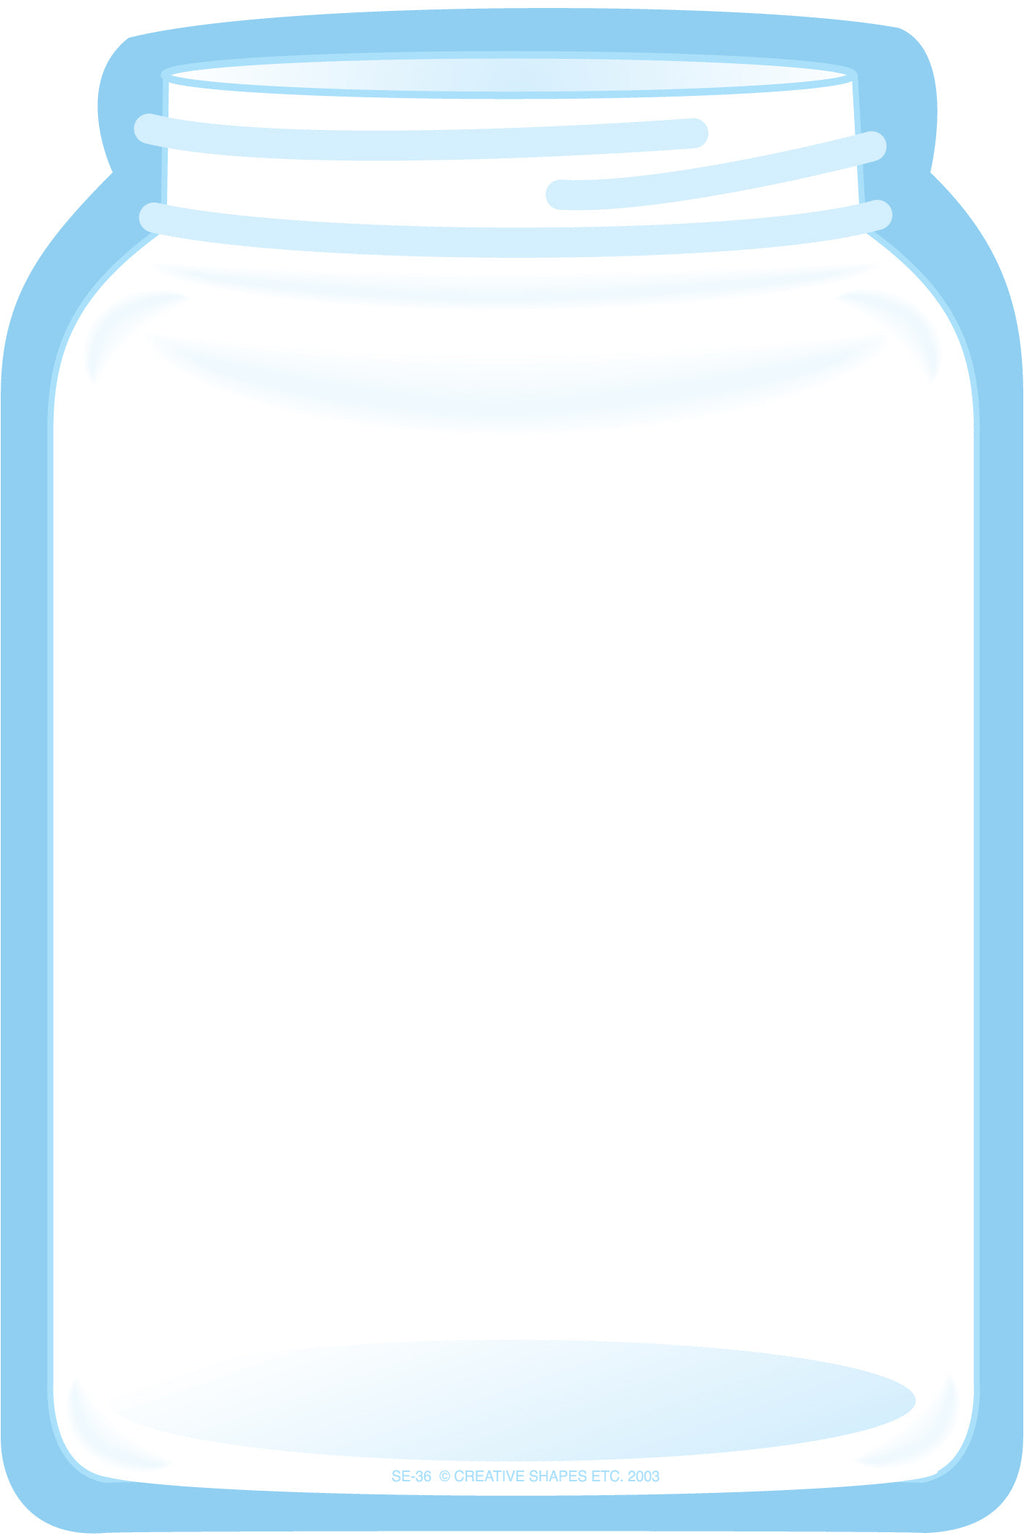 Large Notepad - Jar - Creative Shapes Etc.